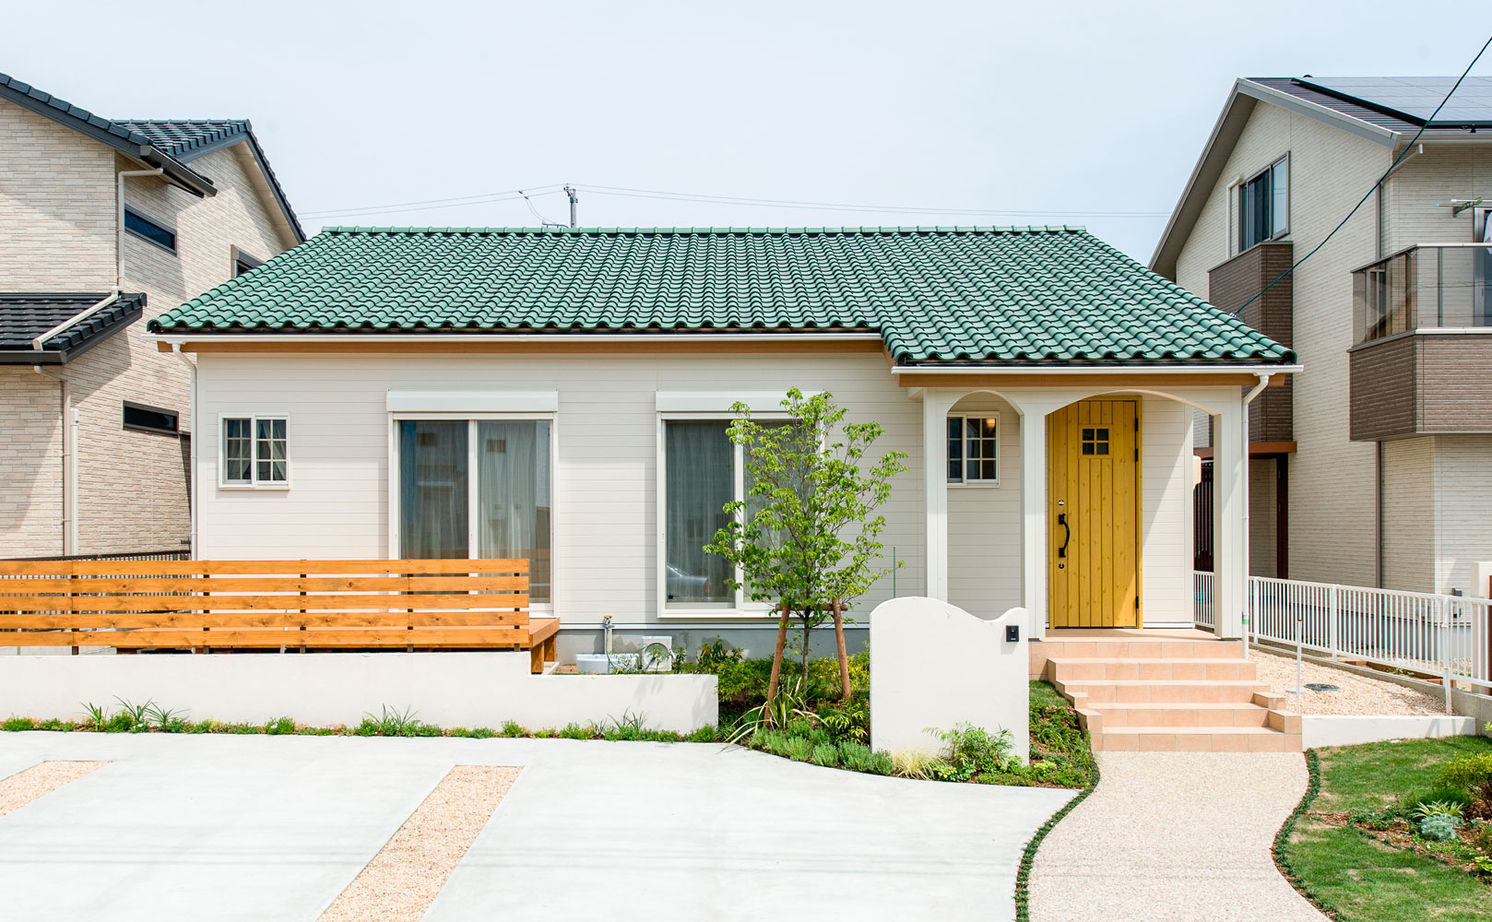 Suumo 1000万円台 平屋 緑の屋根と黄色のドアが可愛い平屋